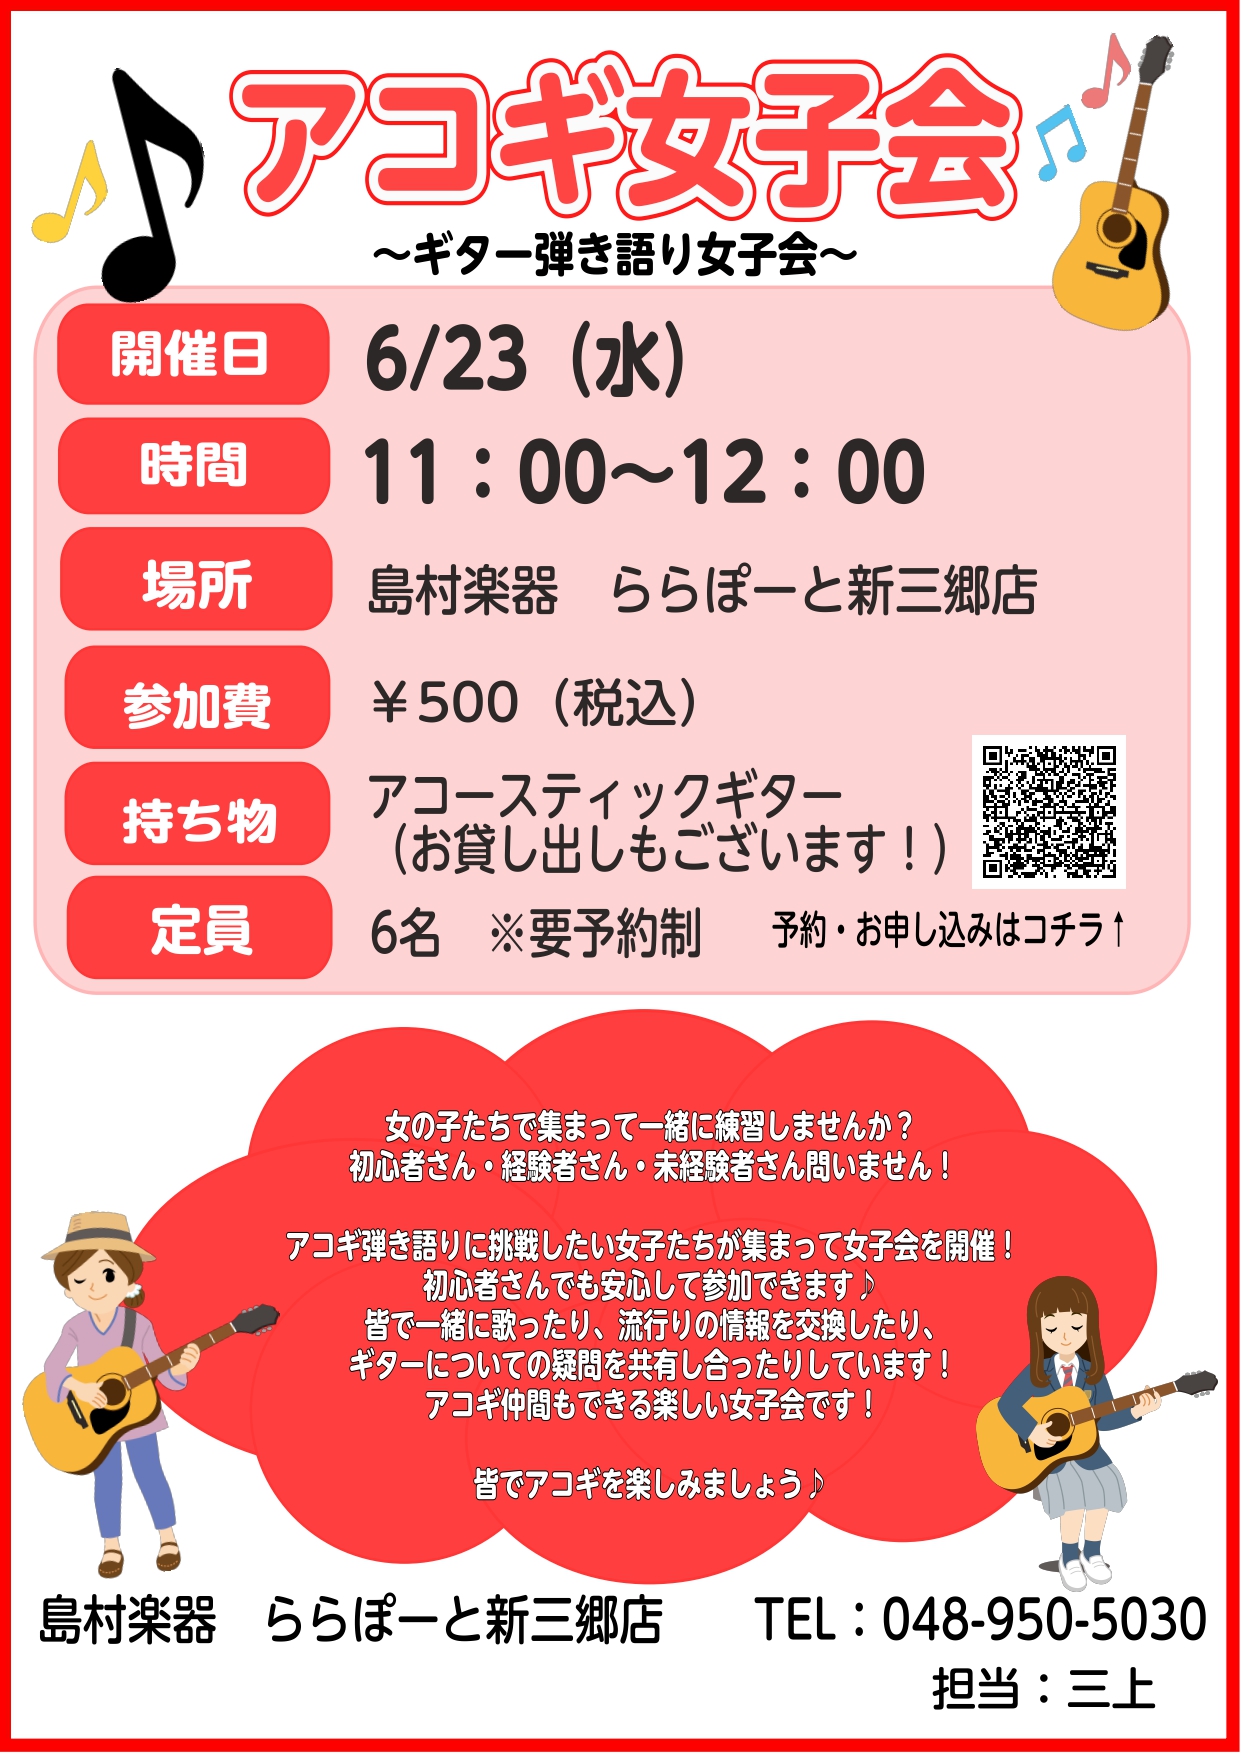 アコギ女子会 ギターを楽しみたい女性のための会 再開 ららぽーと新三郷店 店舗情報 島村楽器